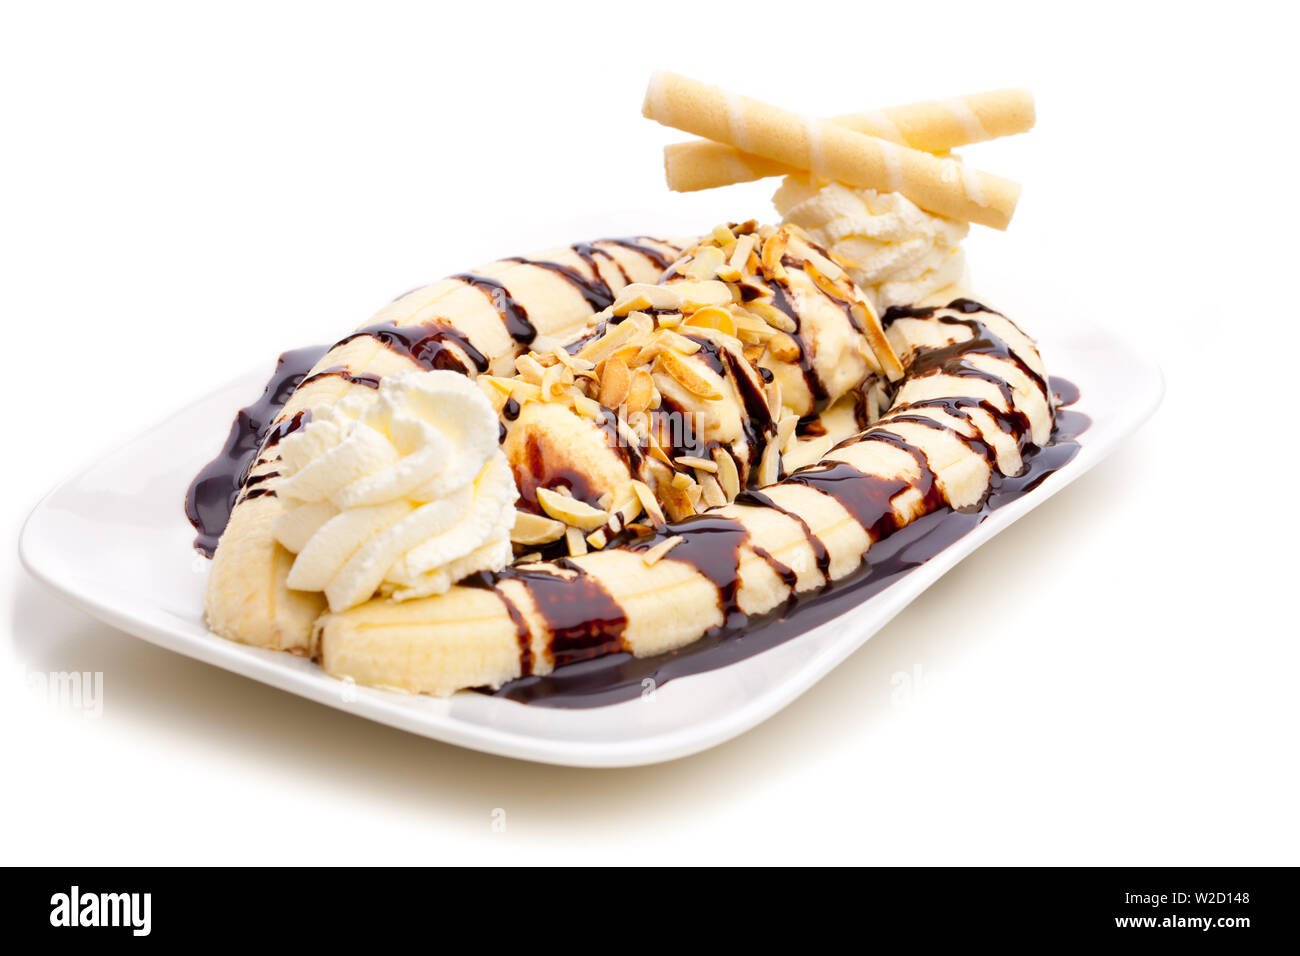 Coupe de glaces : UN banana split avec ice cream cones isolé sur fond blanc  Photo Stock - Alamy